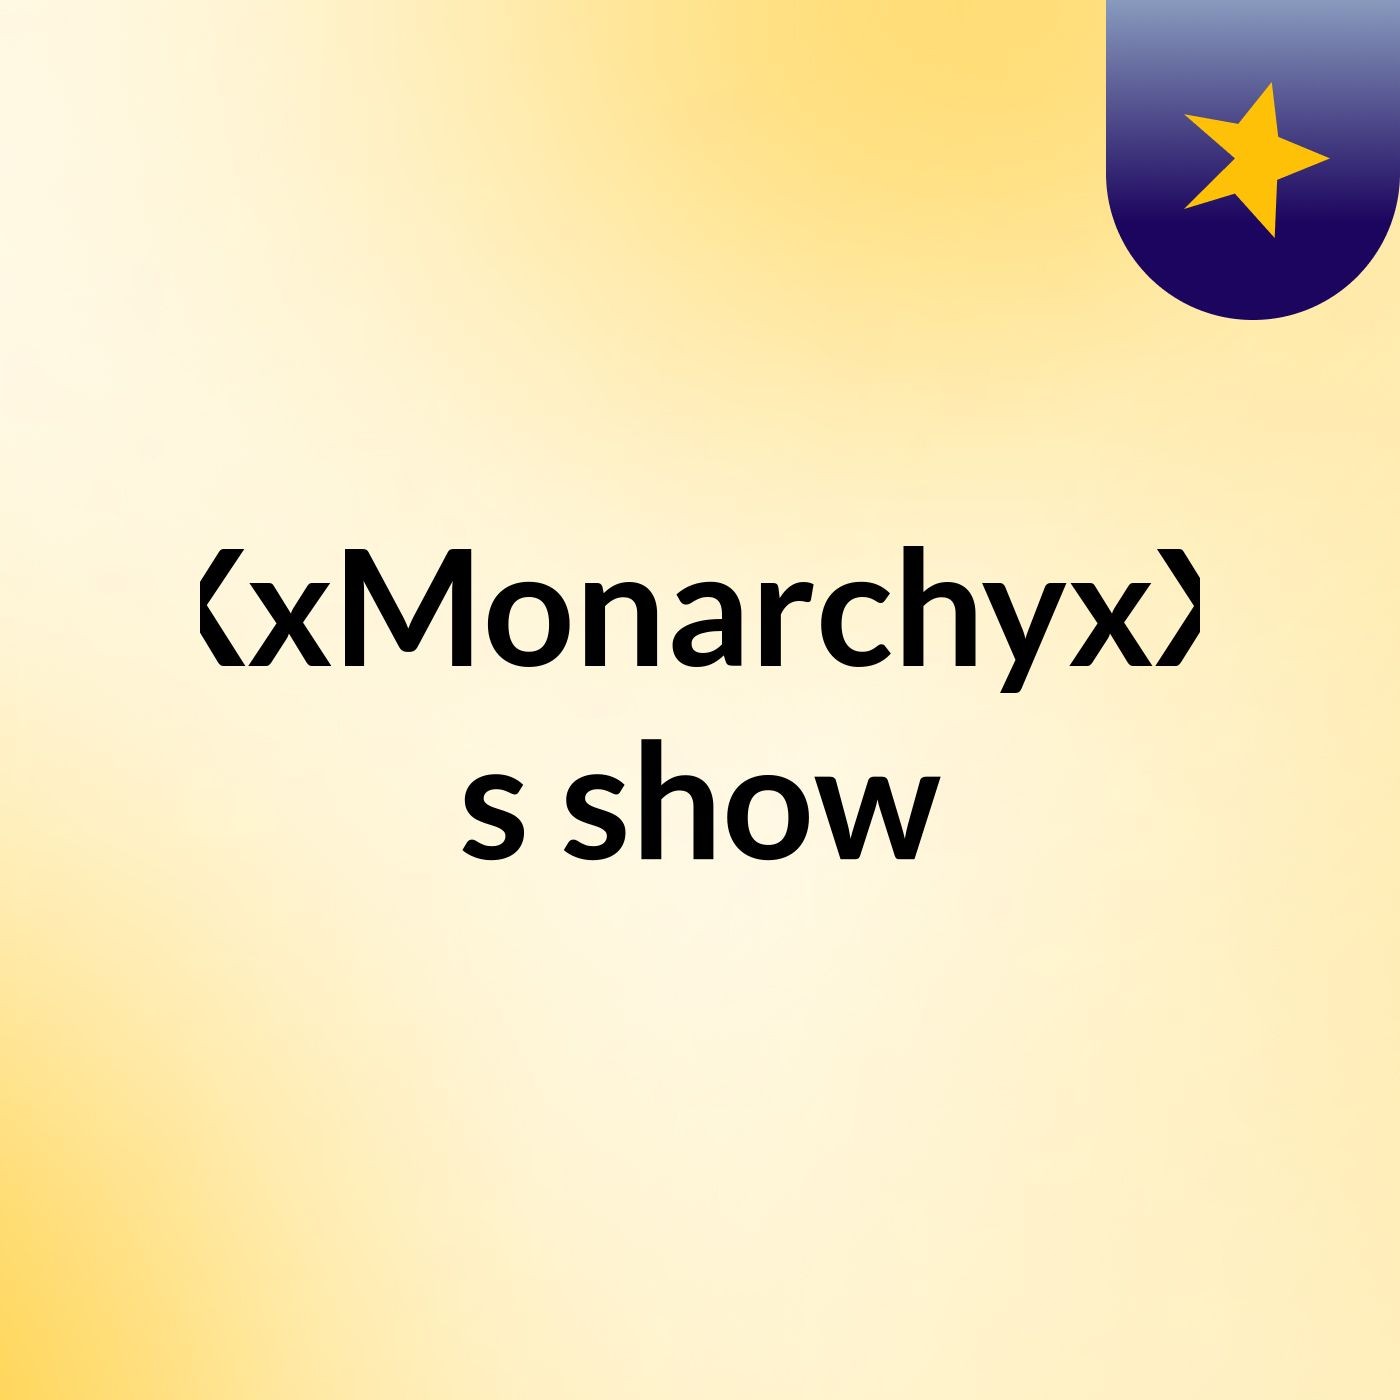 XxMonarchyxX's show